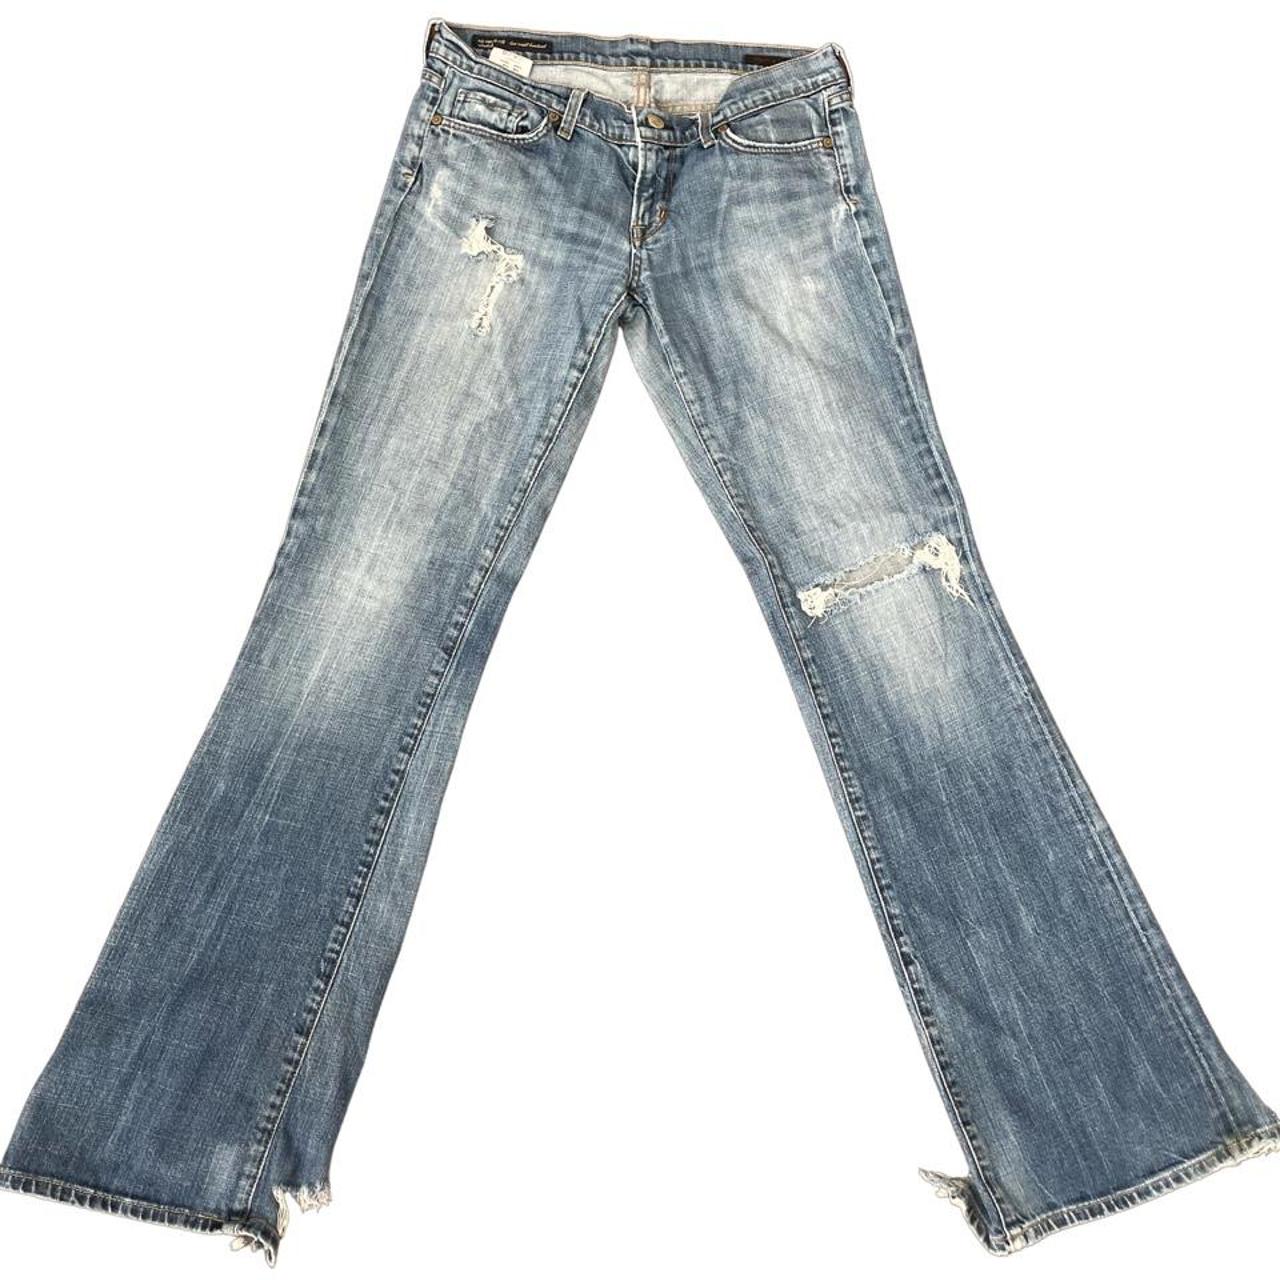 Vintage low waisted jeans - Depop